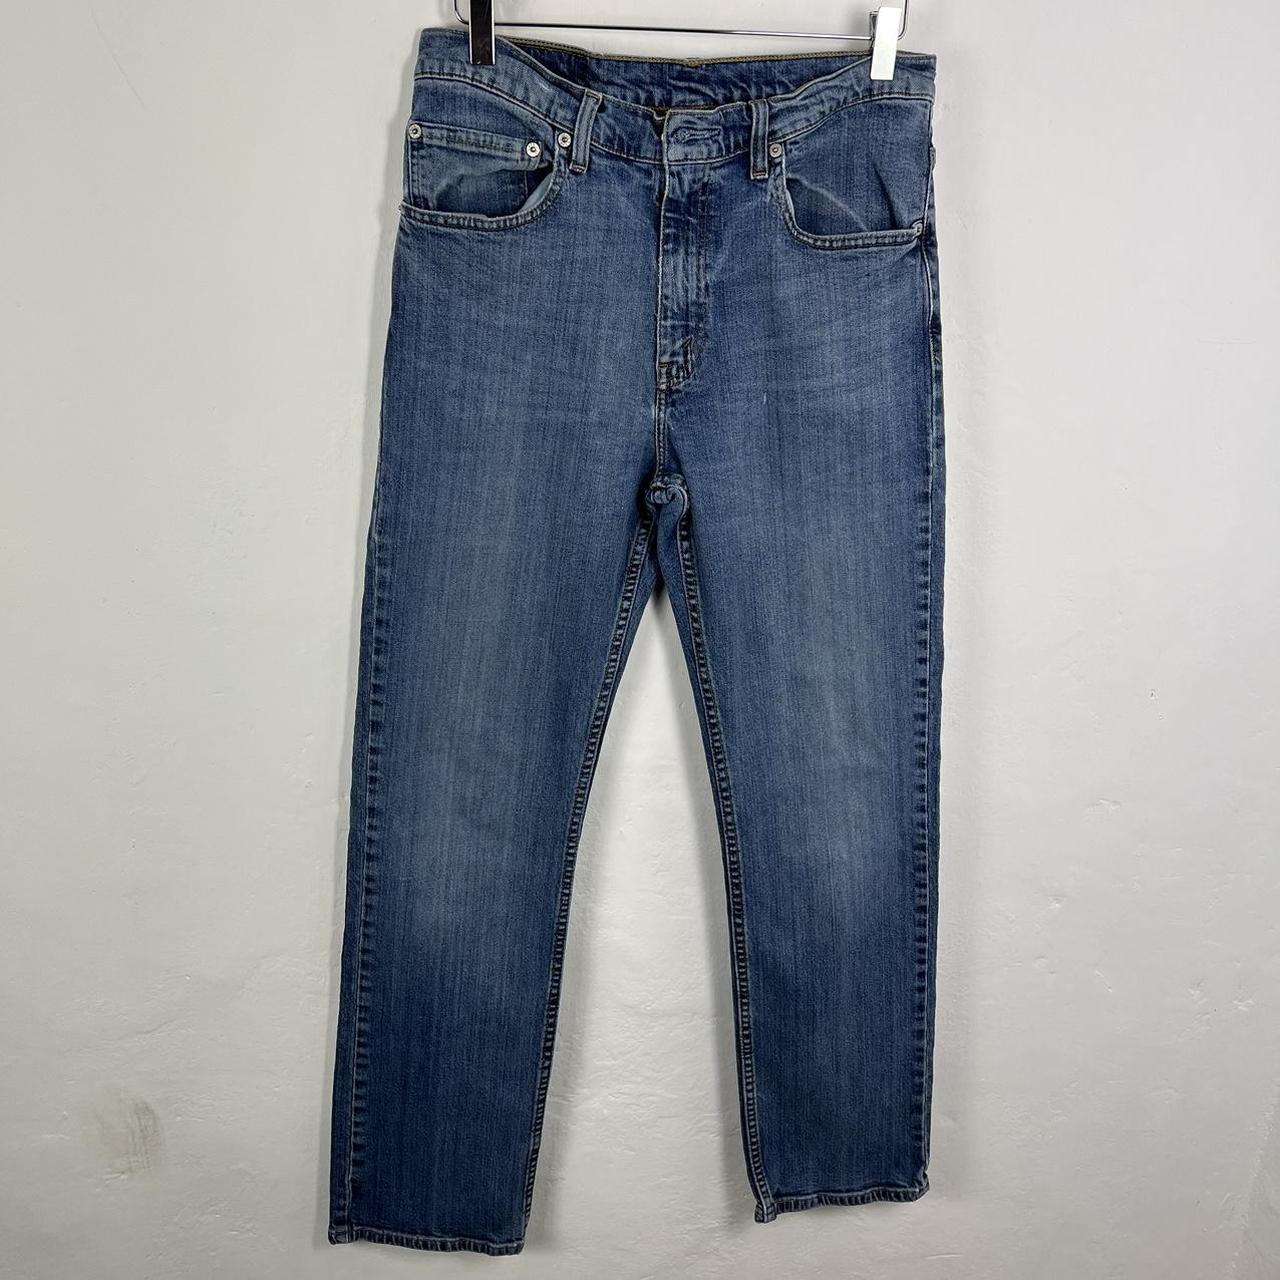 Levi’s 752 jeans 30x32